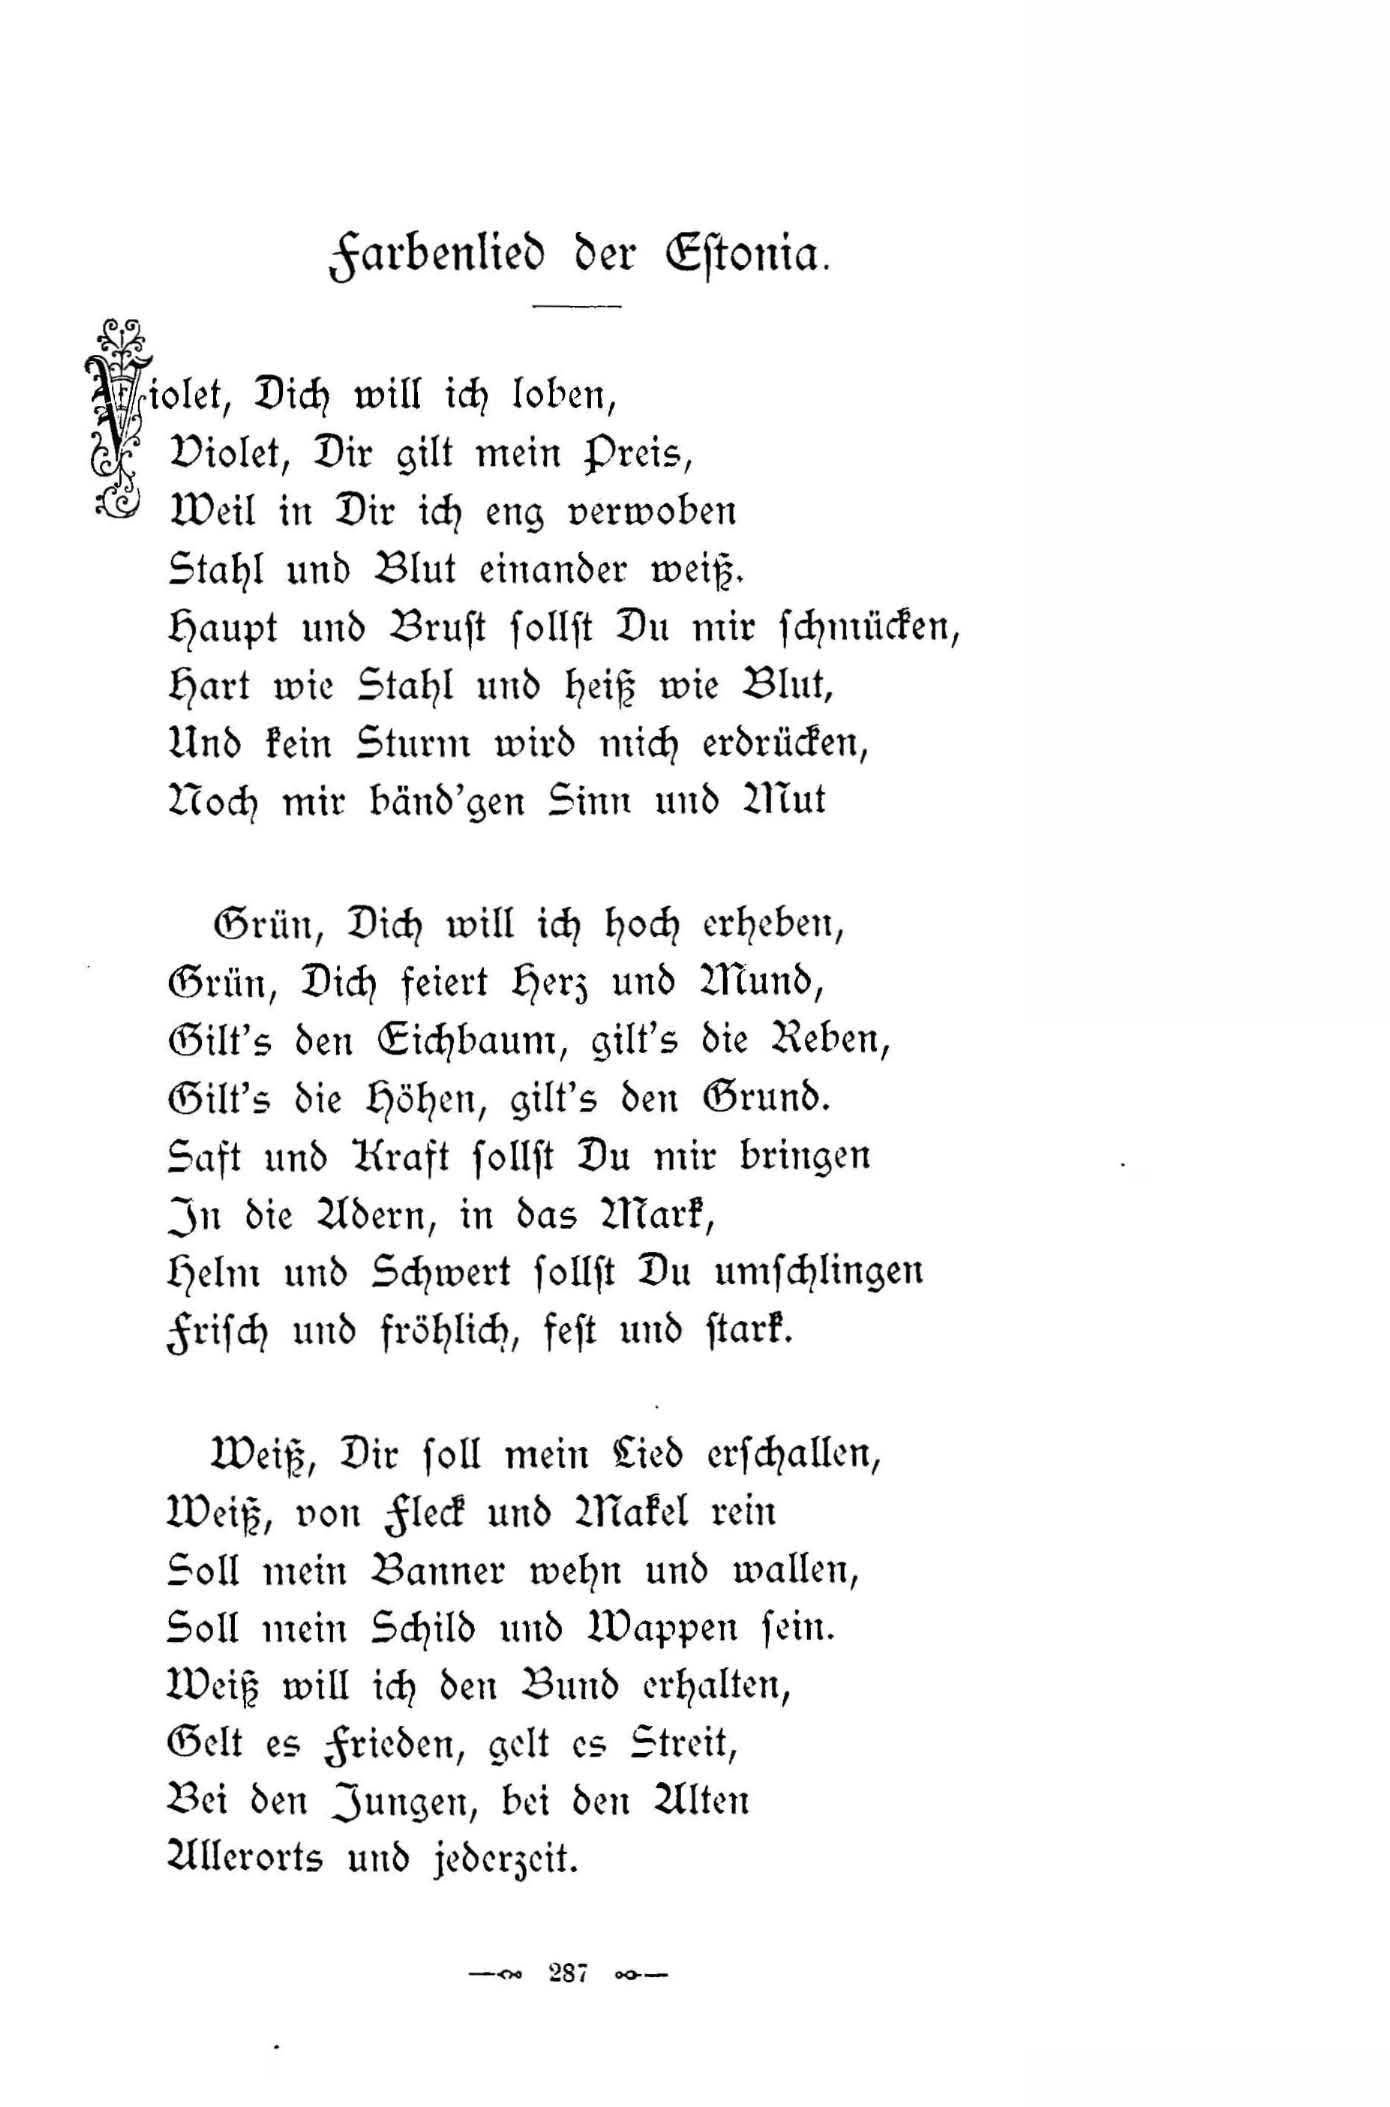 Farbenlied der Estonia (1896) | 1. (287) Põhitekst